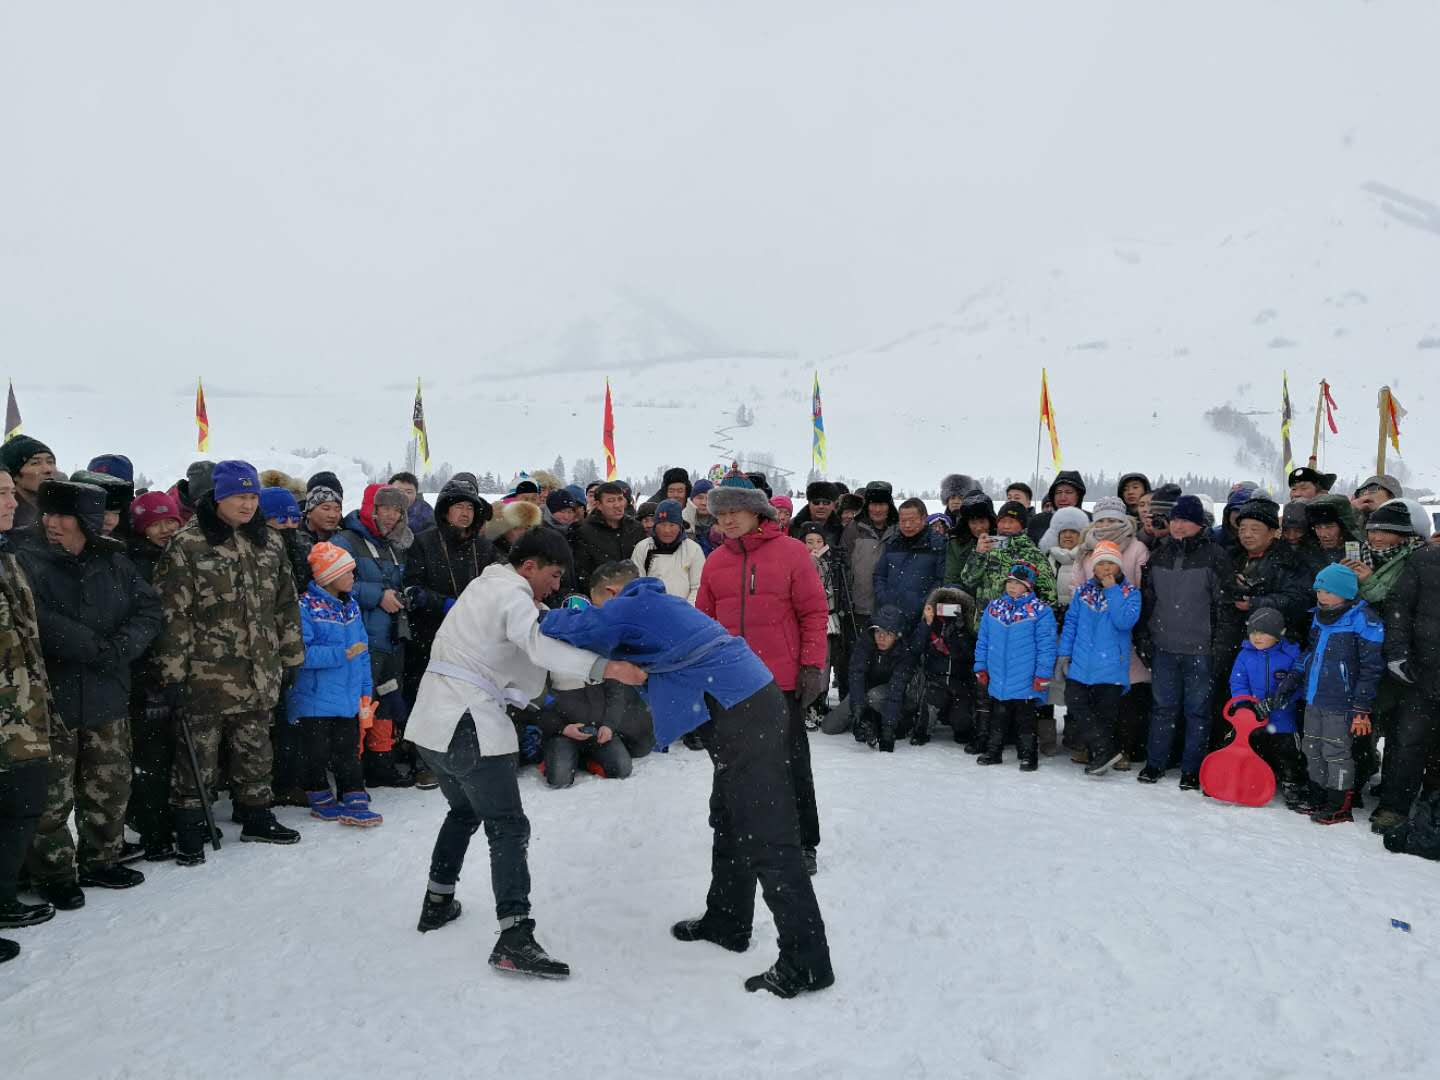 喀納斯冰雪風情旅遊節暨潑雪狂歡節現場舉辦摔跤比賽 應江洪 攝